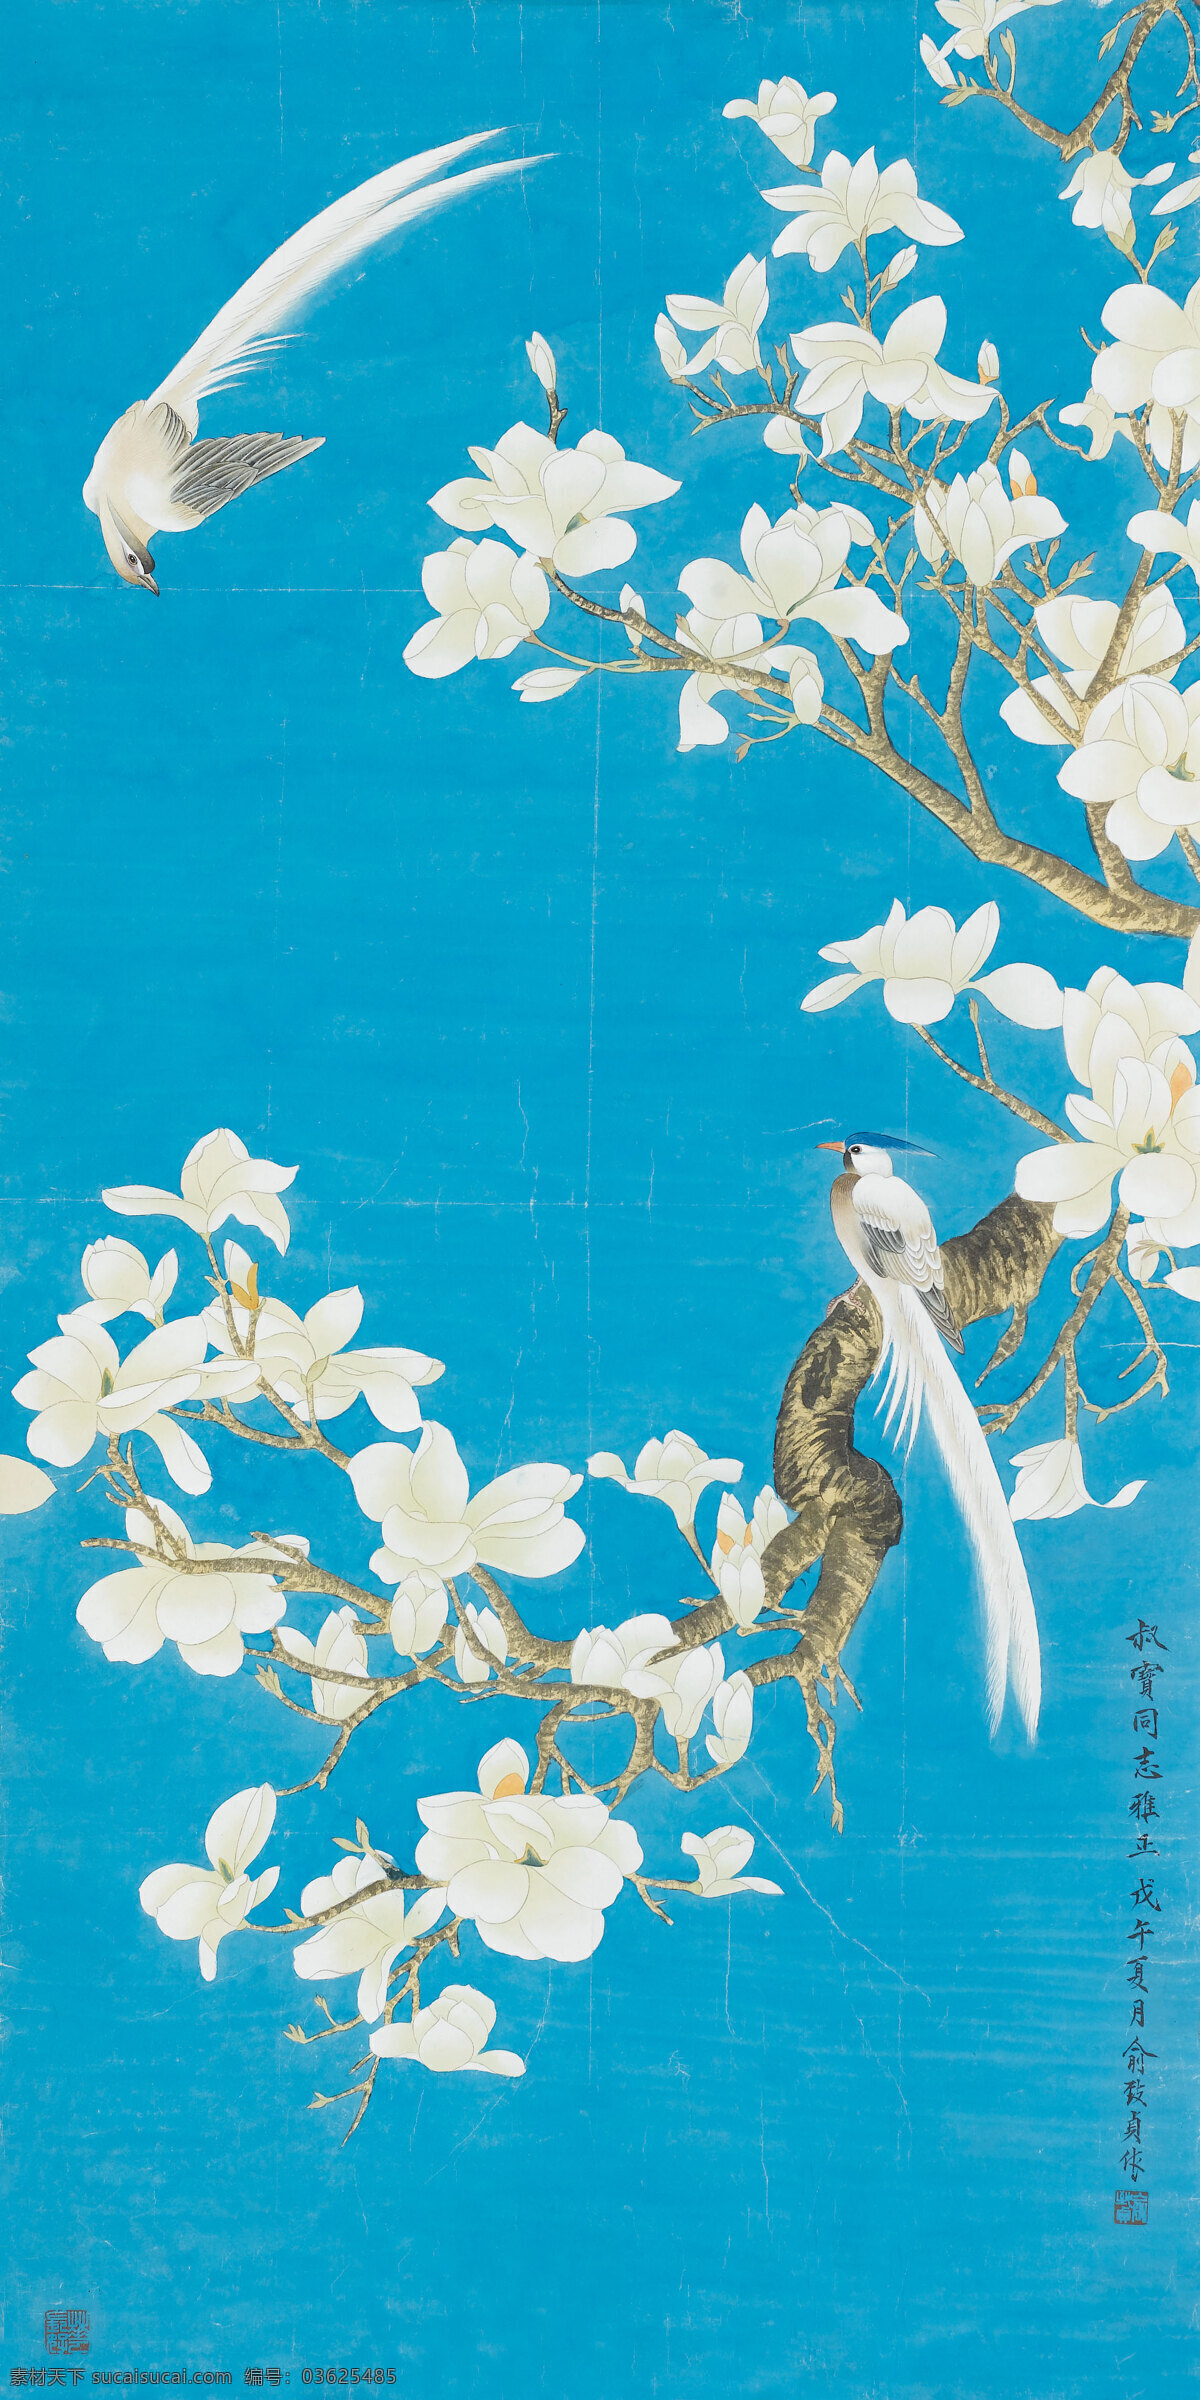 花鸟图 喻继高作品 两只小鸟 飞 栖息在树枝上 中国古代画 中国古画 绘画书法 文化艺术